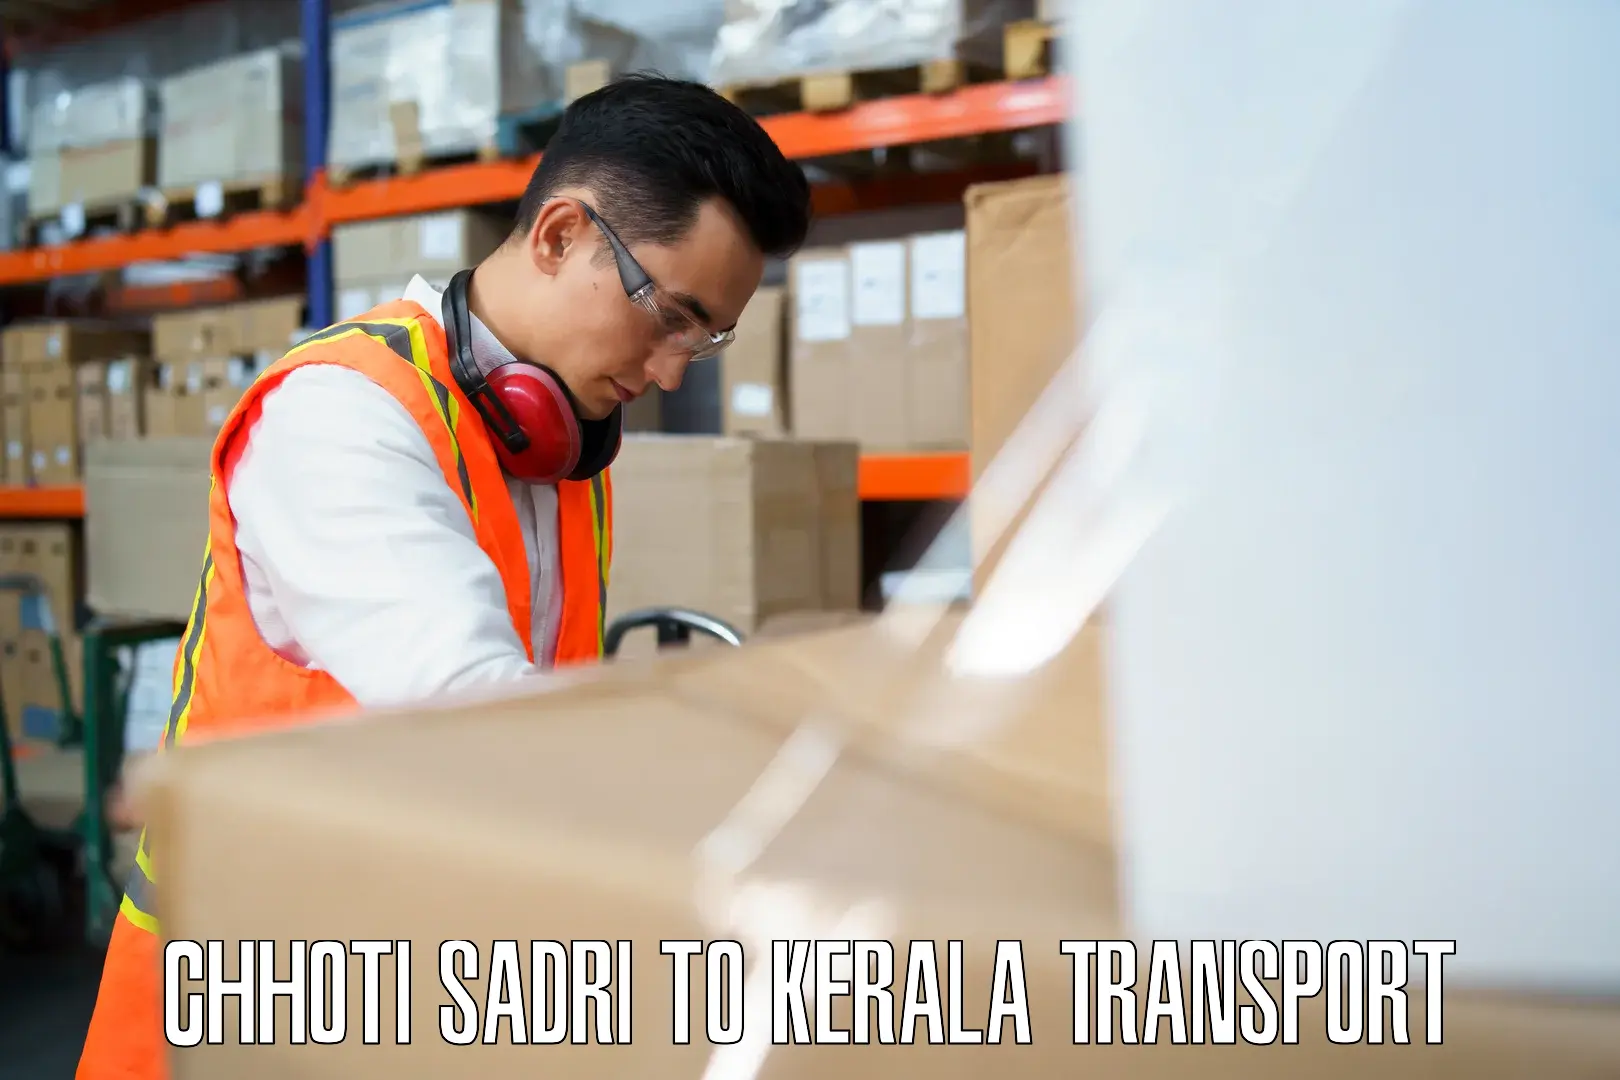 India truck logistics services Chhoti Sadri to Kalanjoor